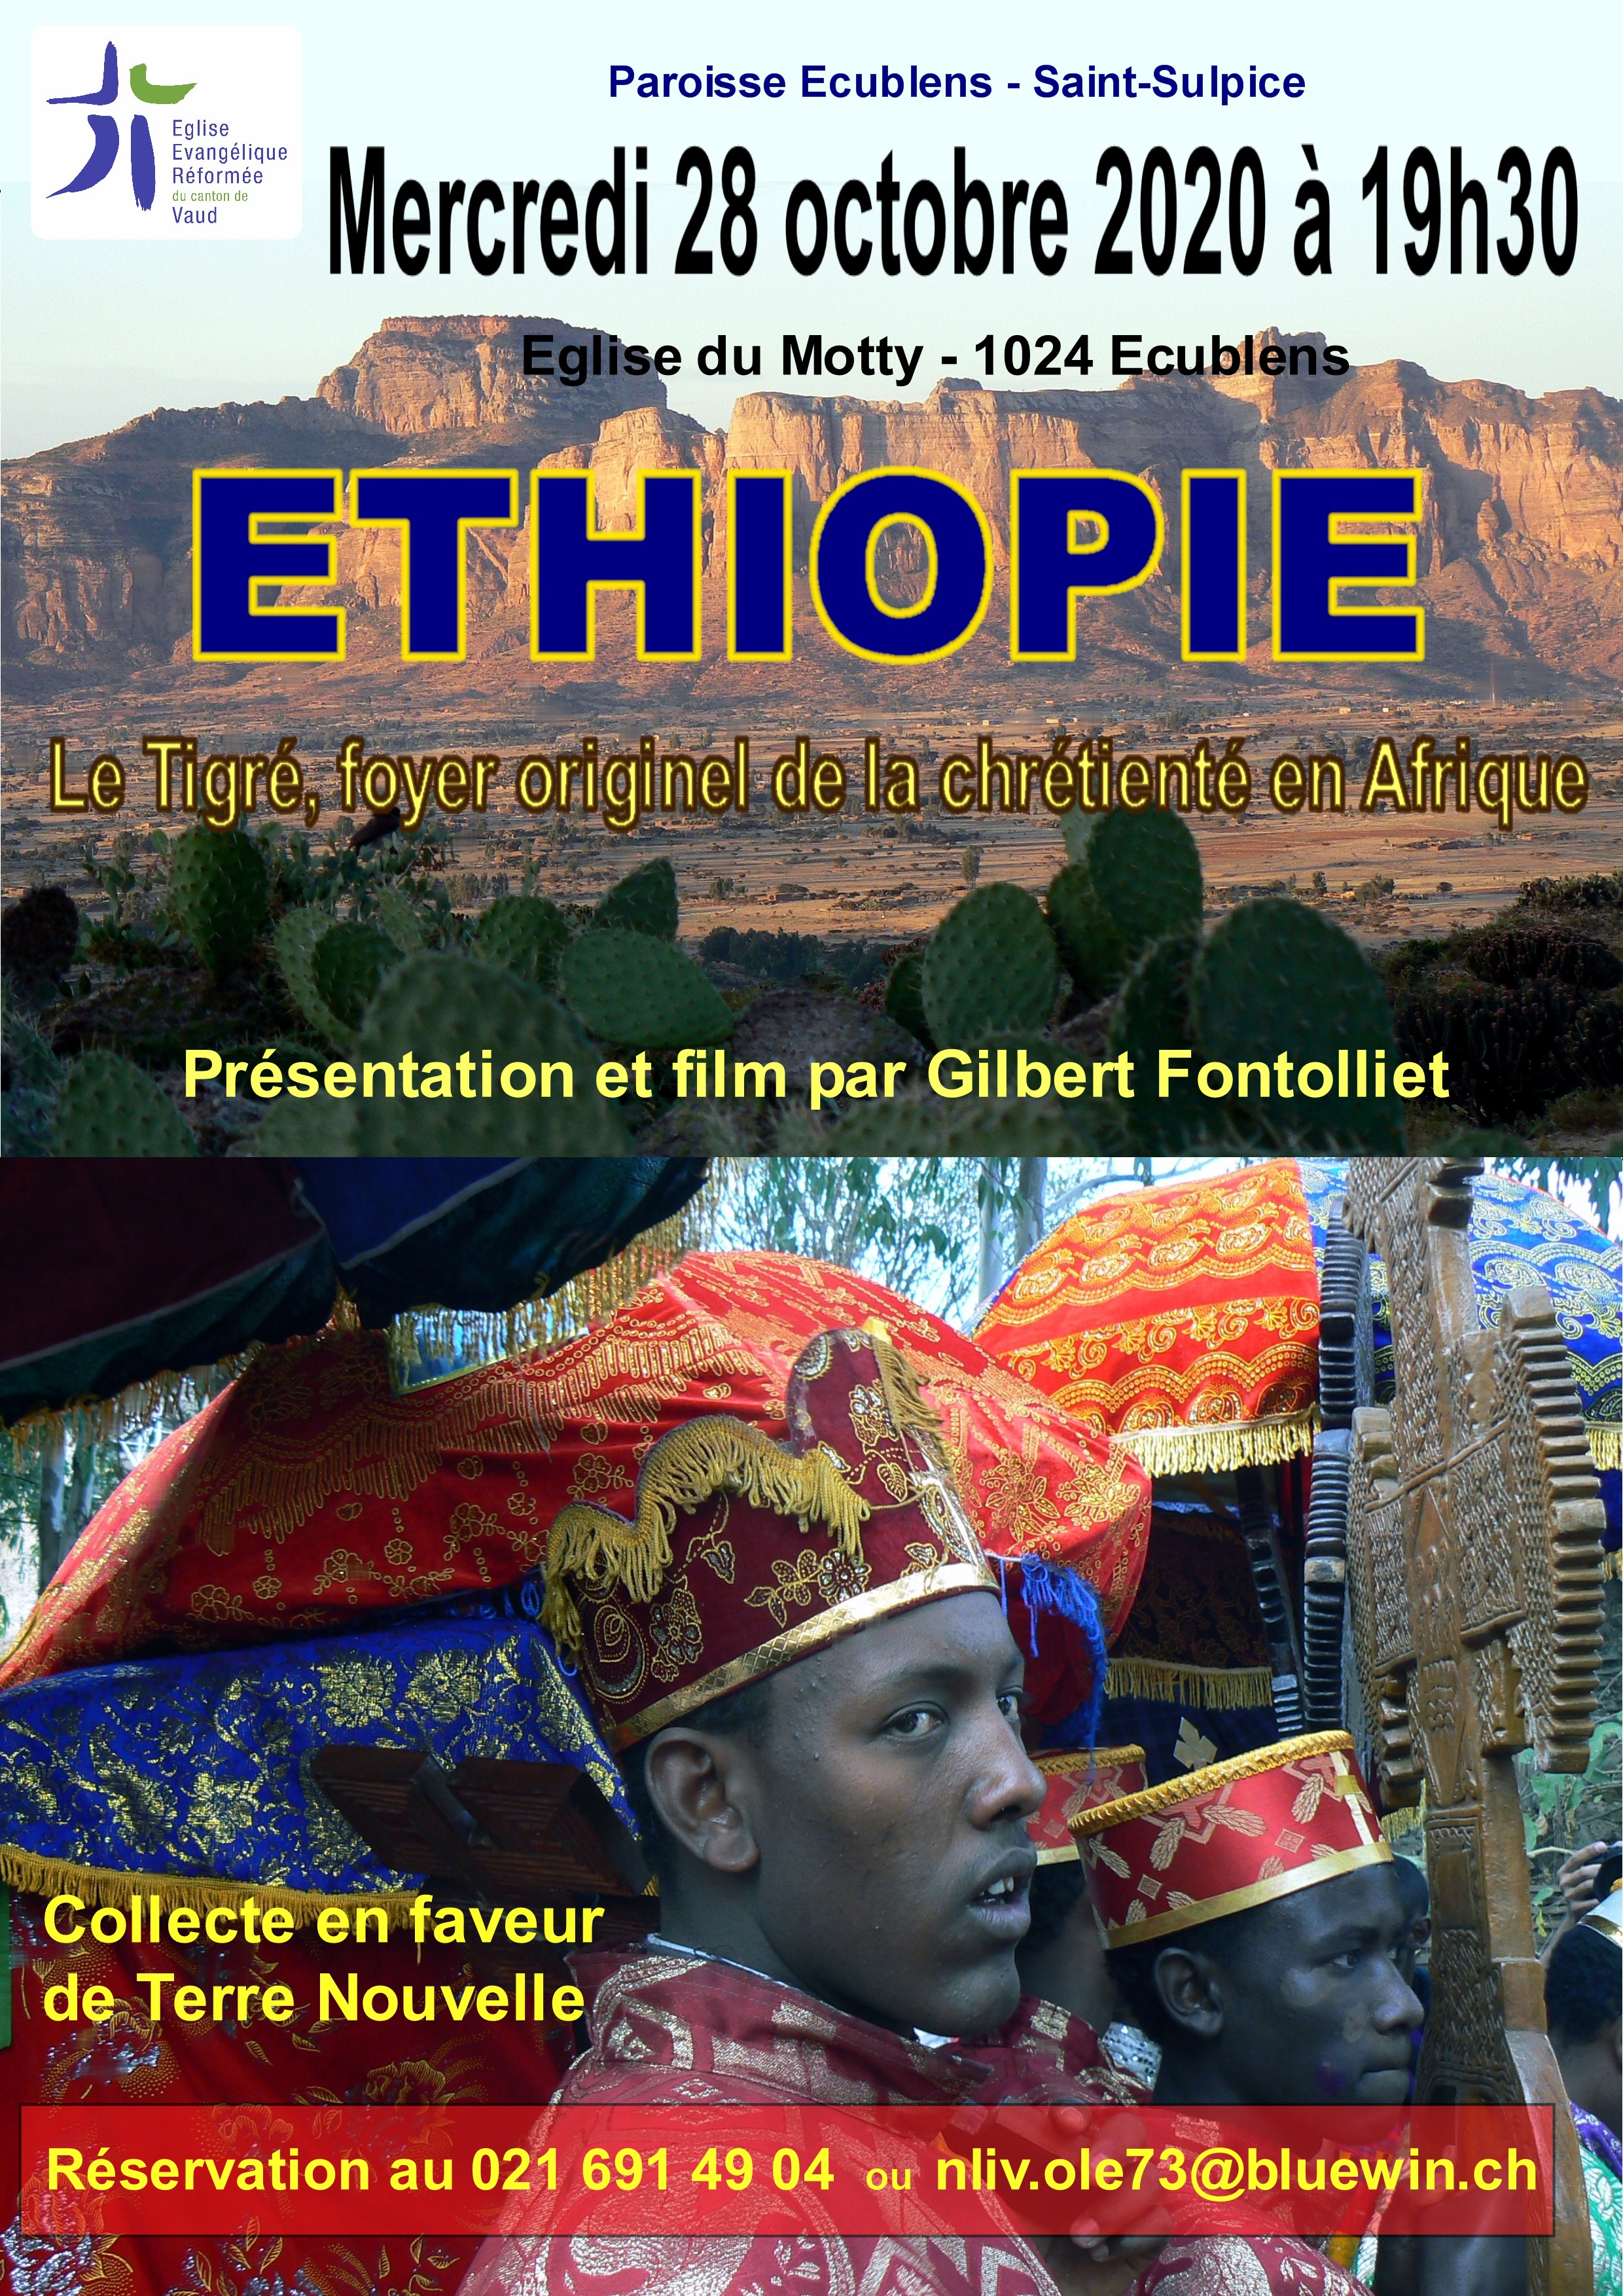 Ethiopie film Gilbert Fontollliet